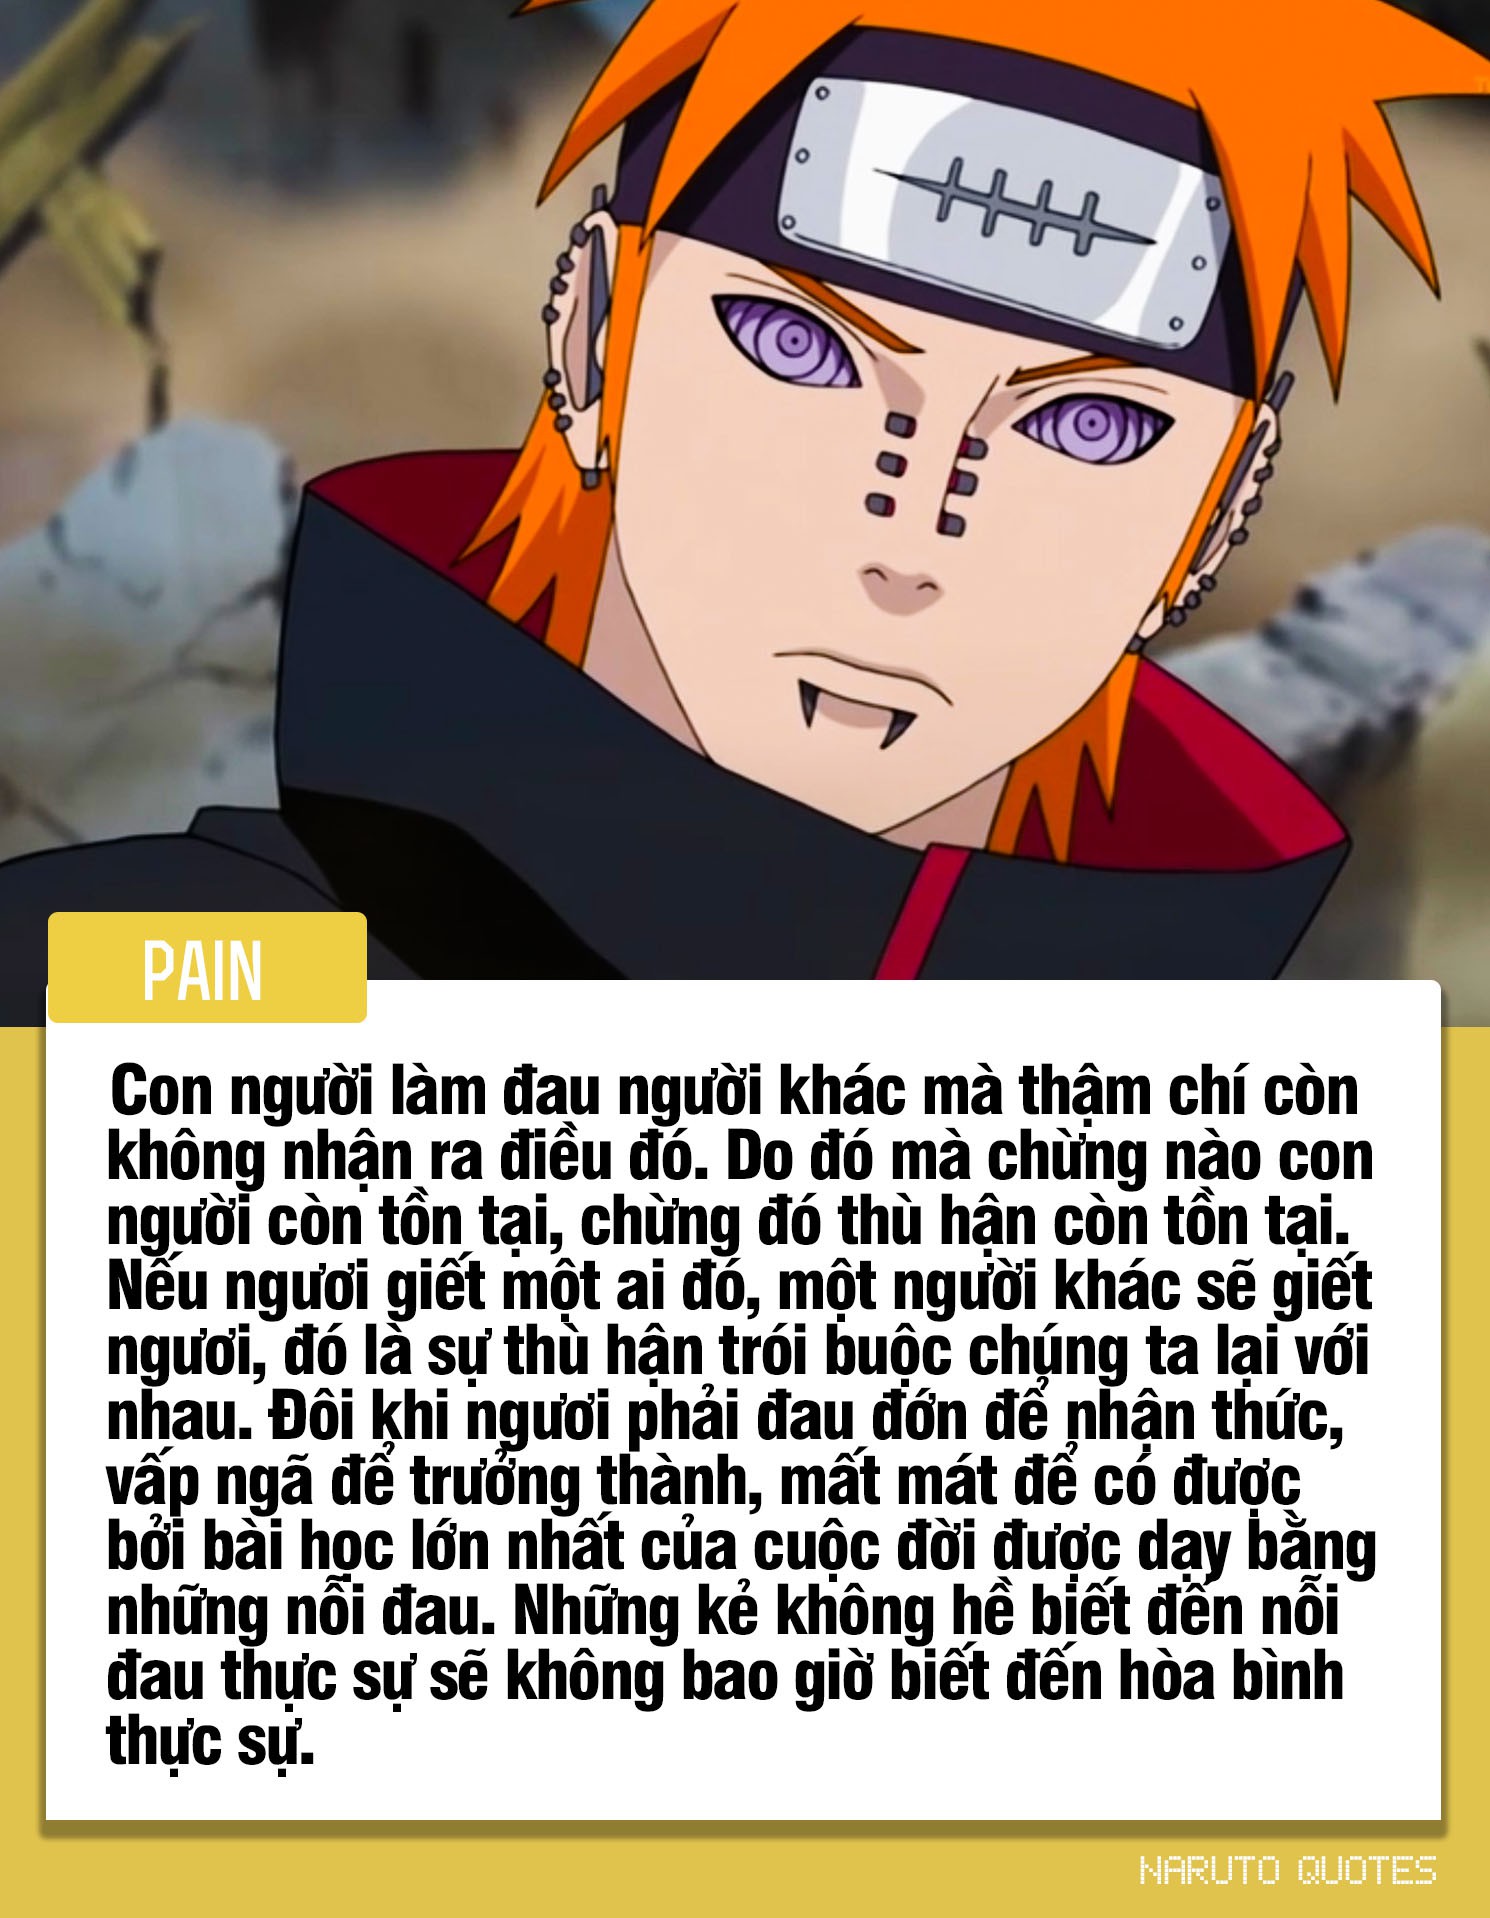 10 câu nói ý nghĩa của các nhân vật trong Naruto, câu thứ 3 sẽ là động lực giúp nhiều người phấn đấu - Ảnh 1.